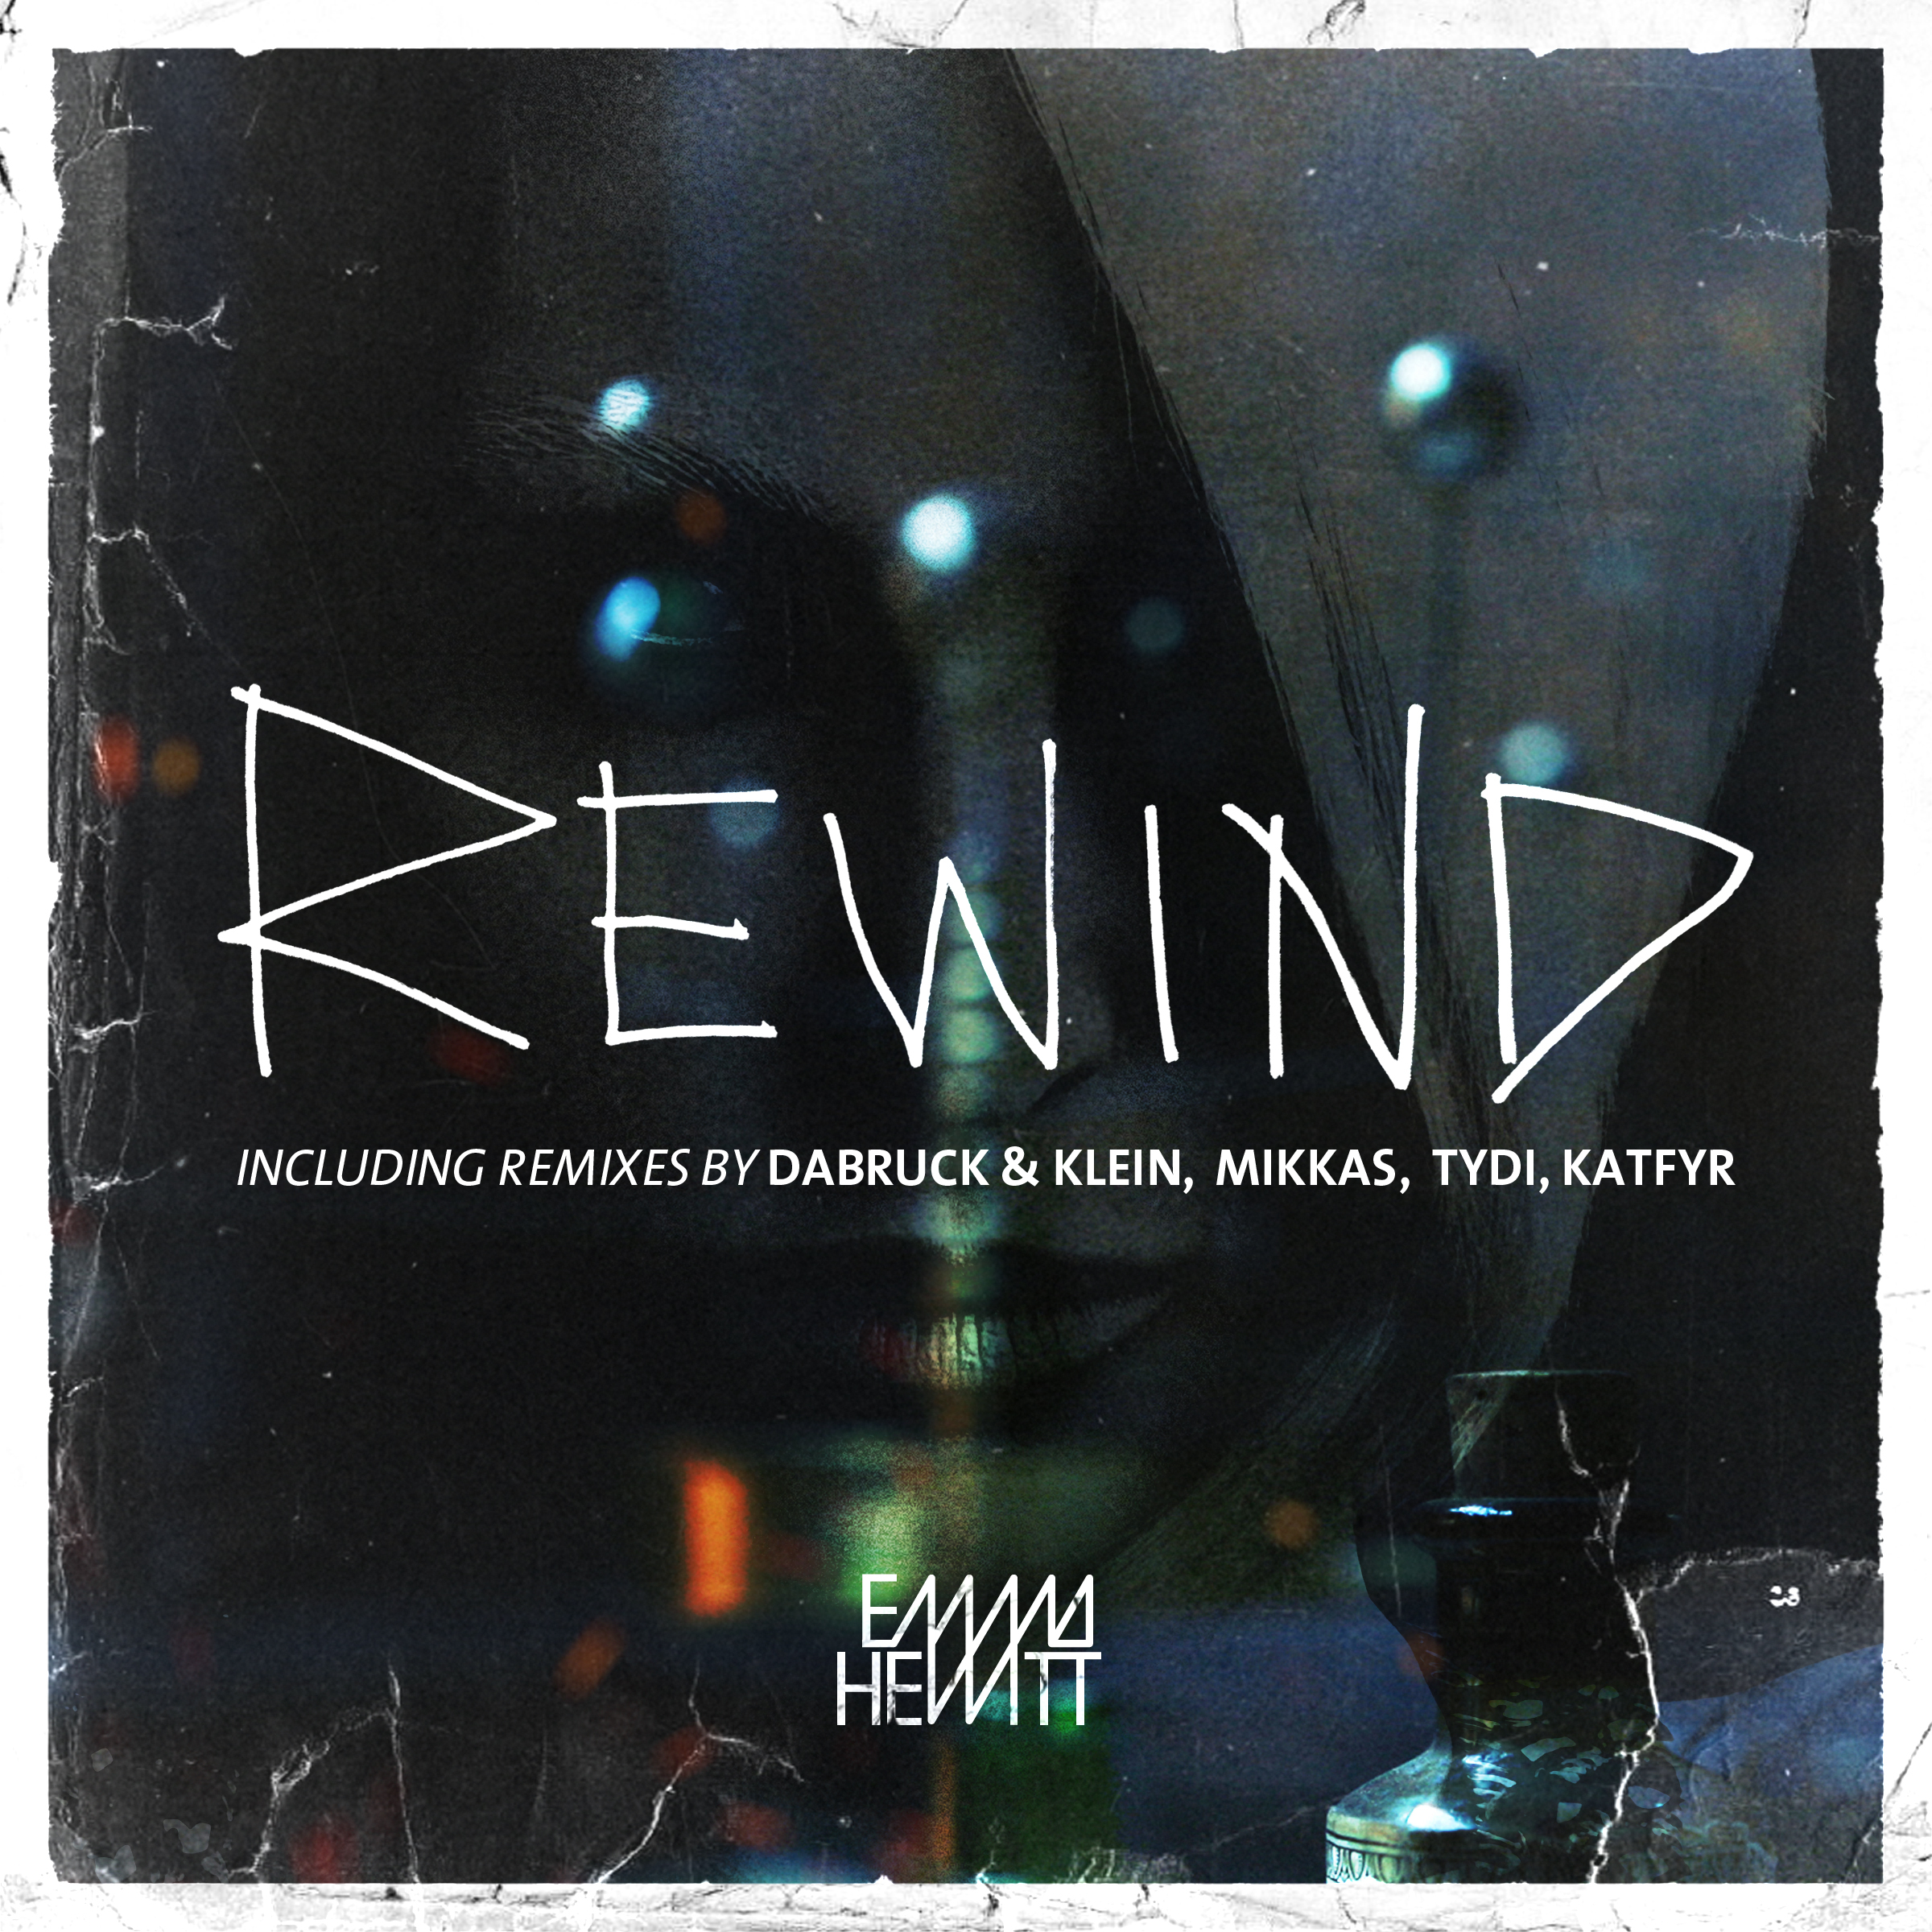 Rewind (Dabruck & Klein Remix)